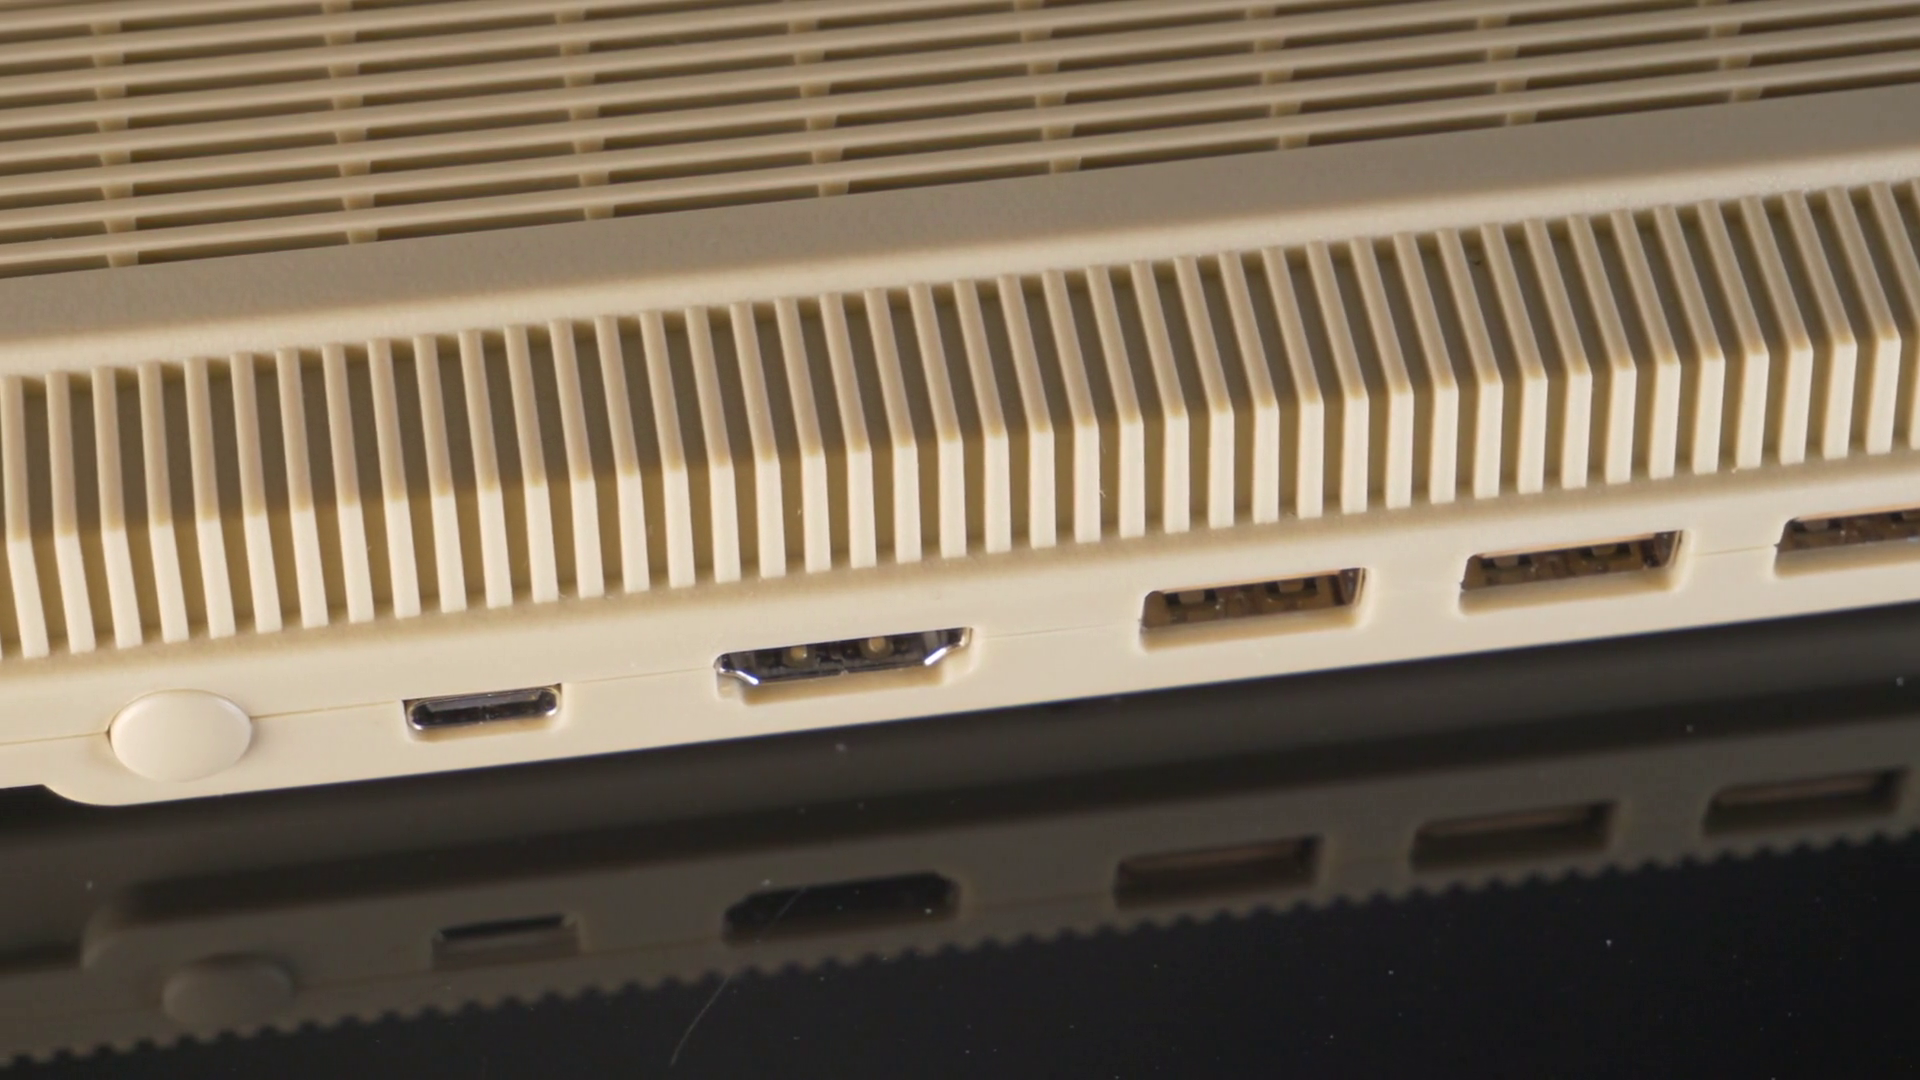 The A500 Mini shown here is a smaller version of the original Commodore Amiga 500.